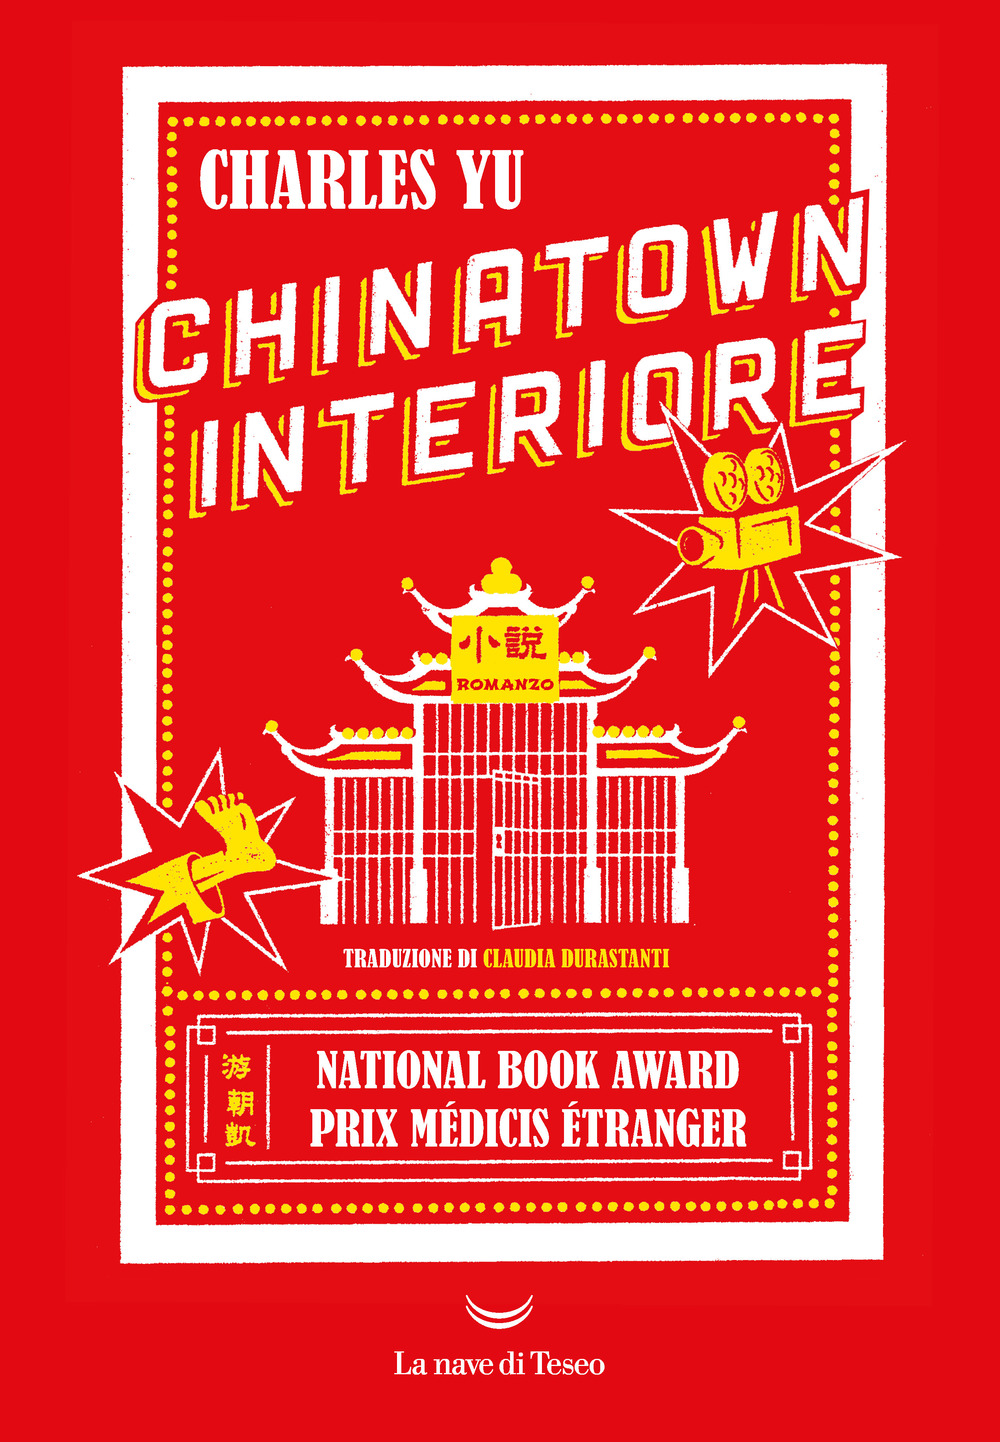 Libri Yu Charles - Chinatown Interiore NUOVO SIGILLATO, EDIZIONE DEL 22/04/2021 SUBITO DISPONIBILE